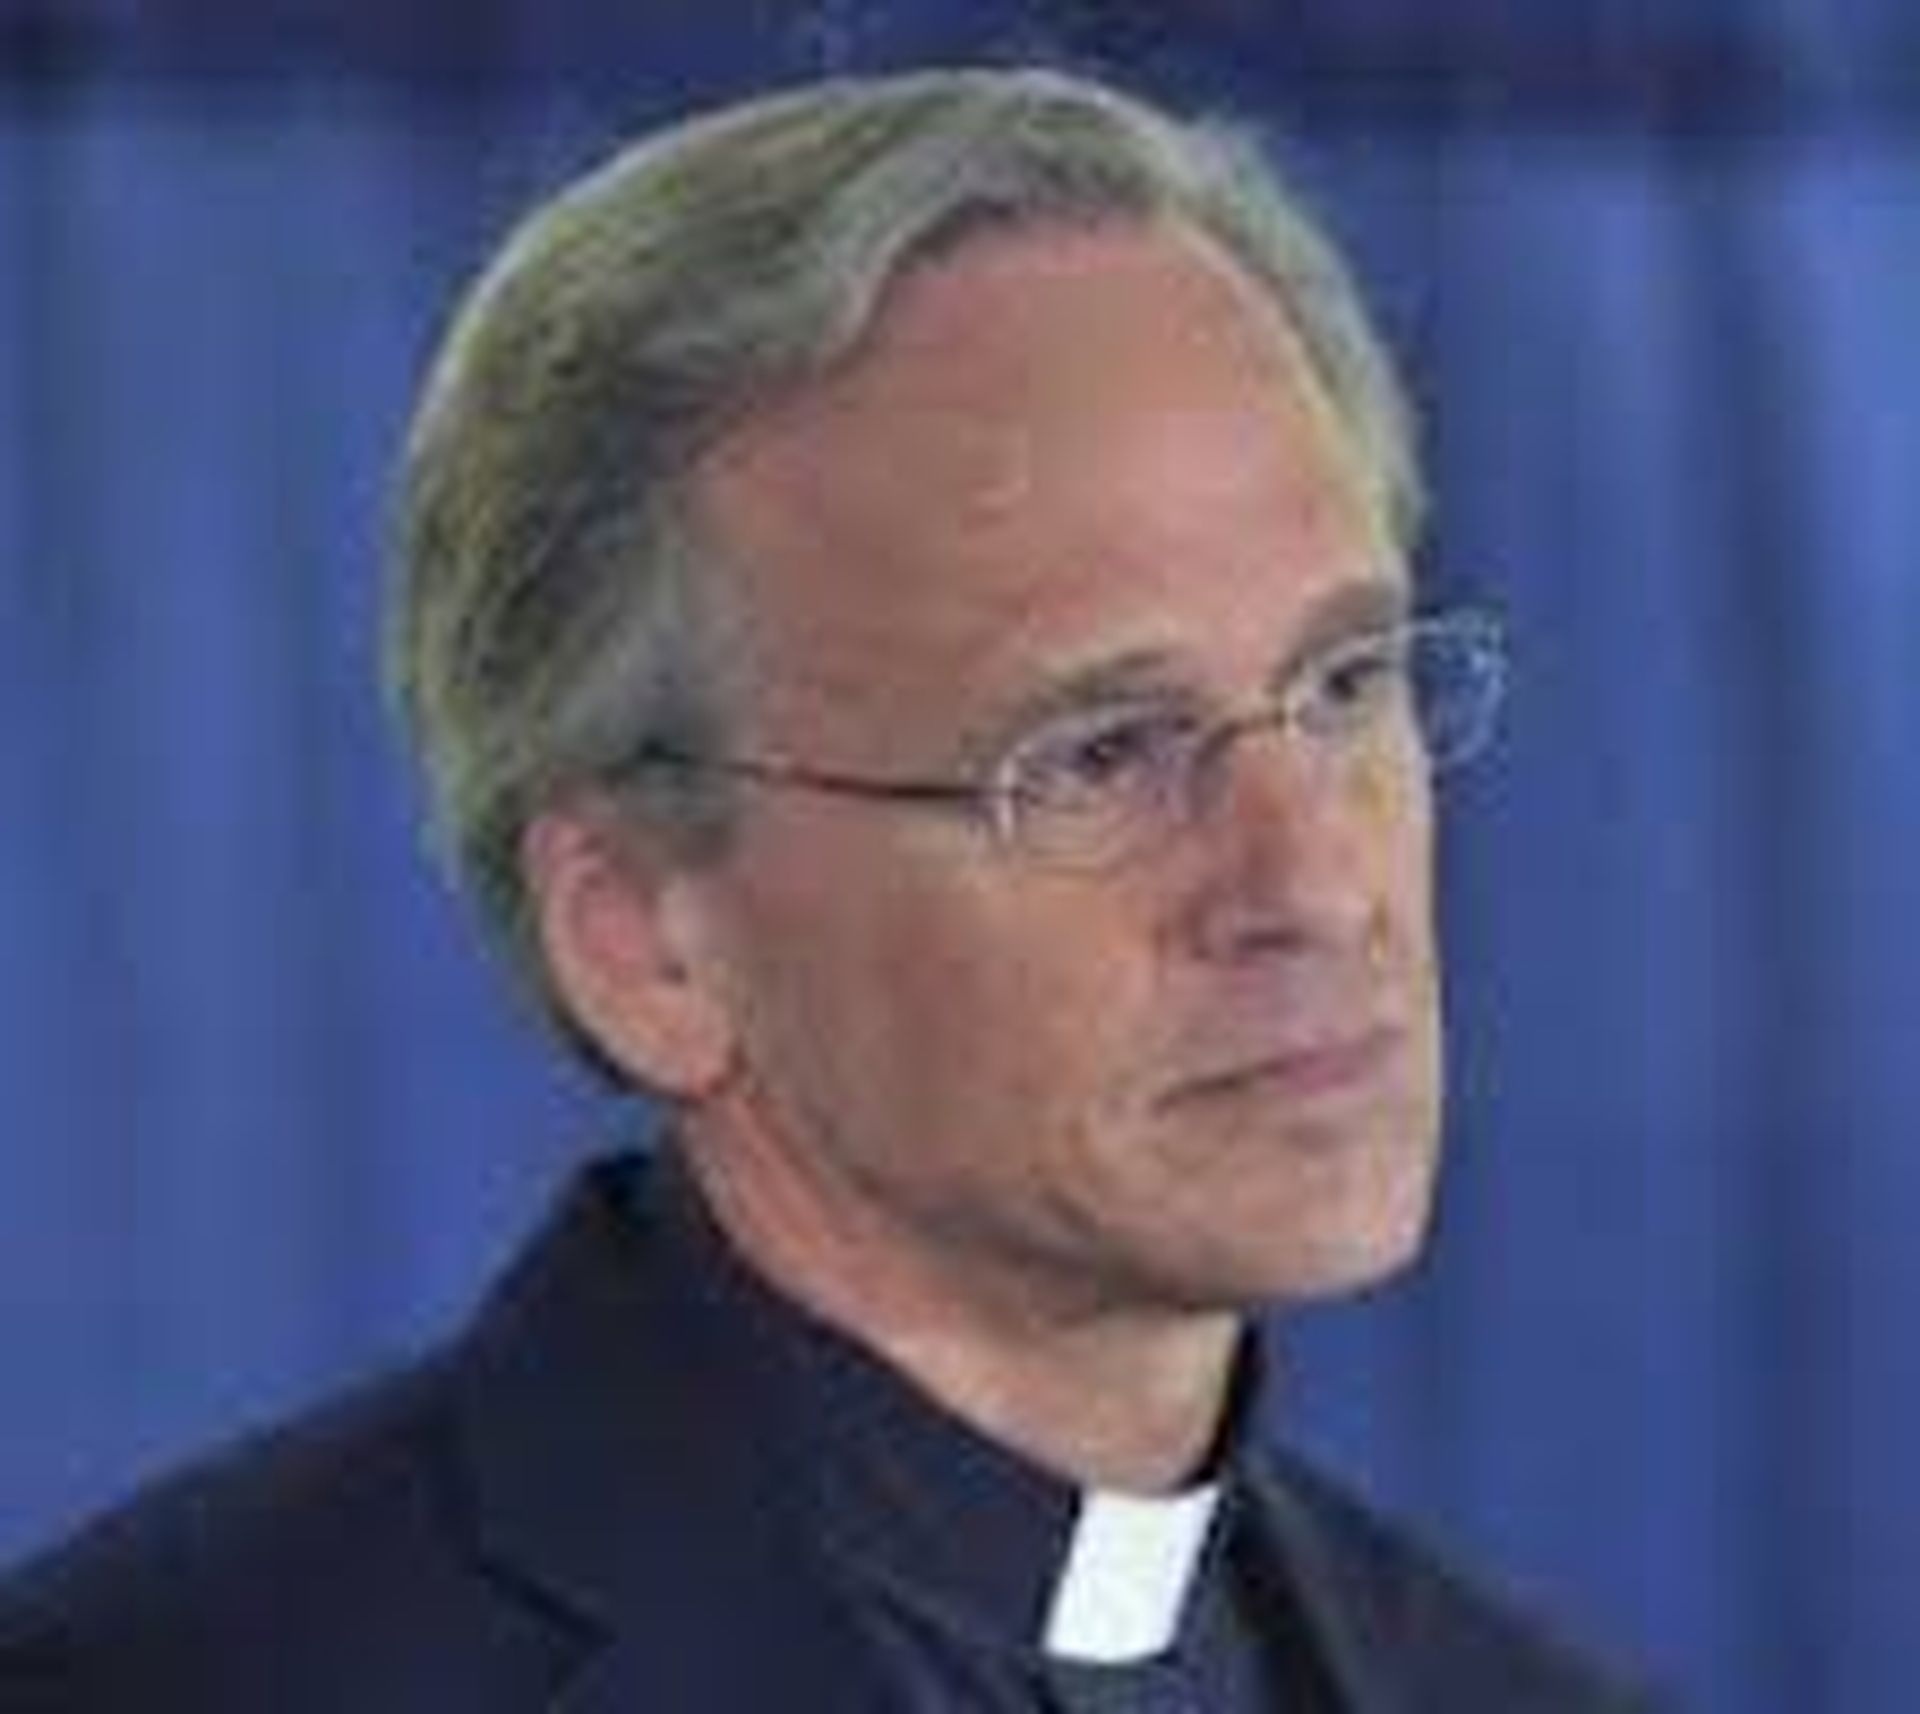 Rev. John Jenkins, president of Notre Dame, tested positive for COVID-19.